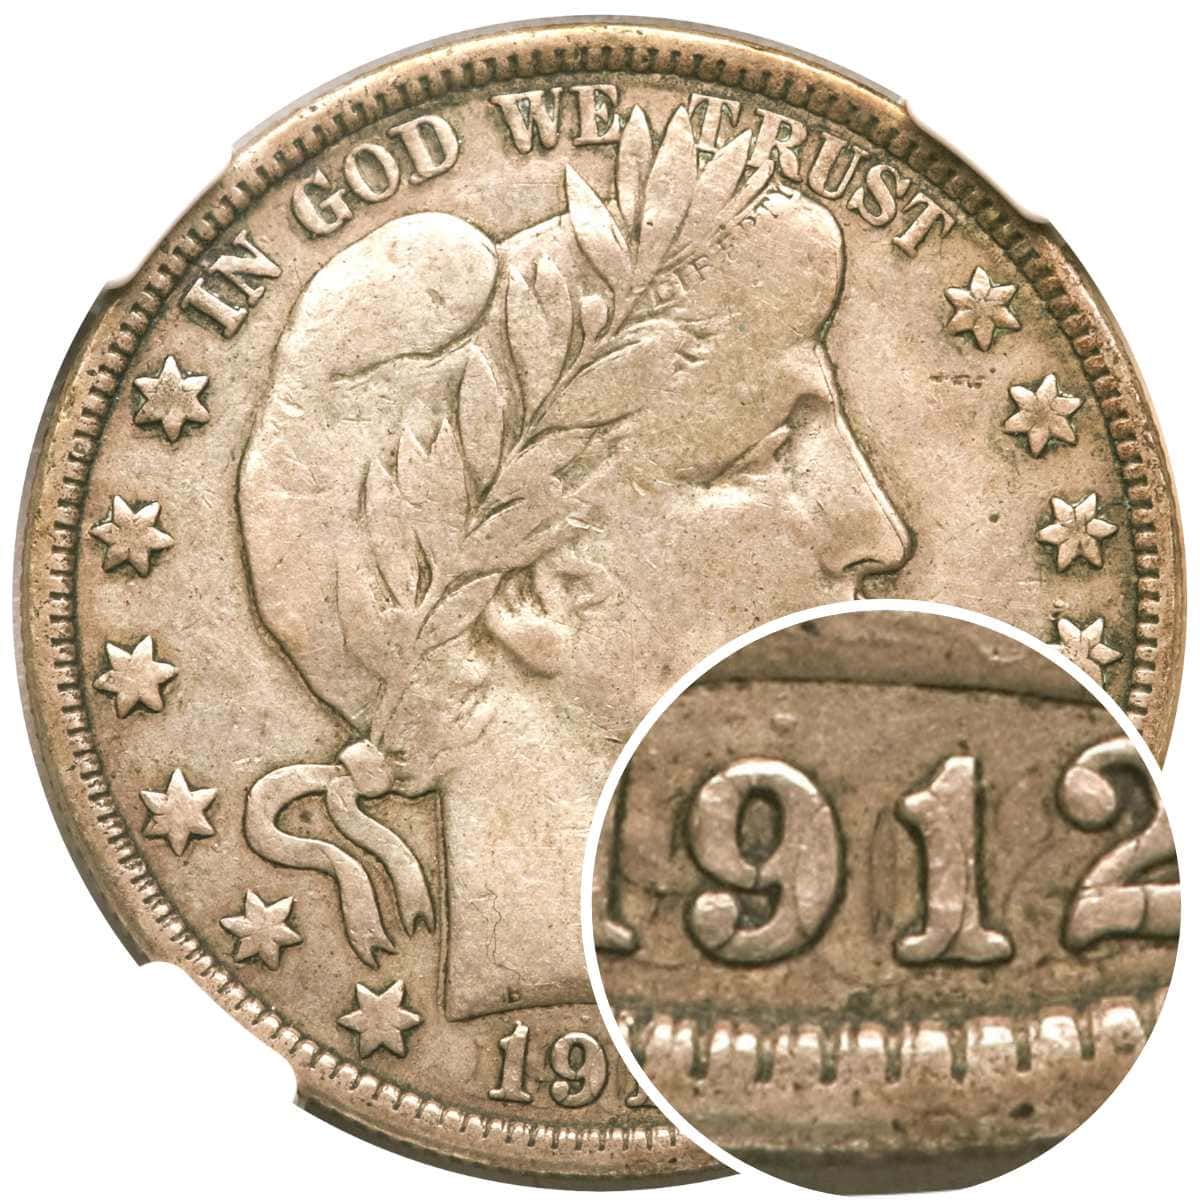 1912 Half Dollar Struck on 1902 Half Dollar